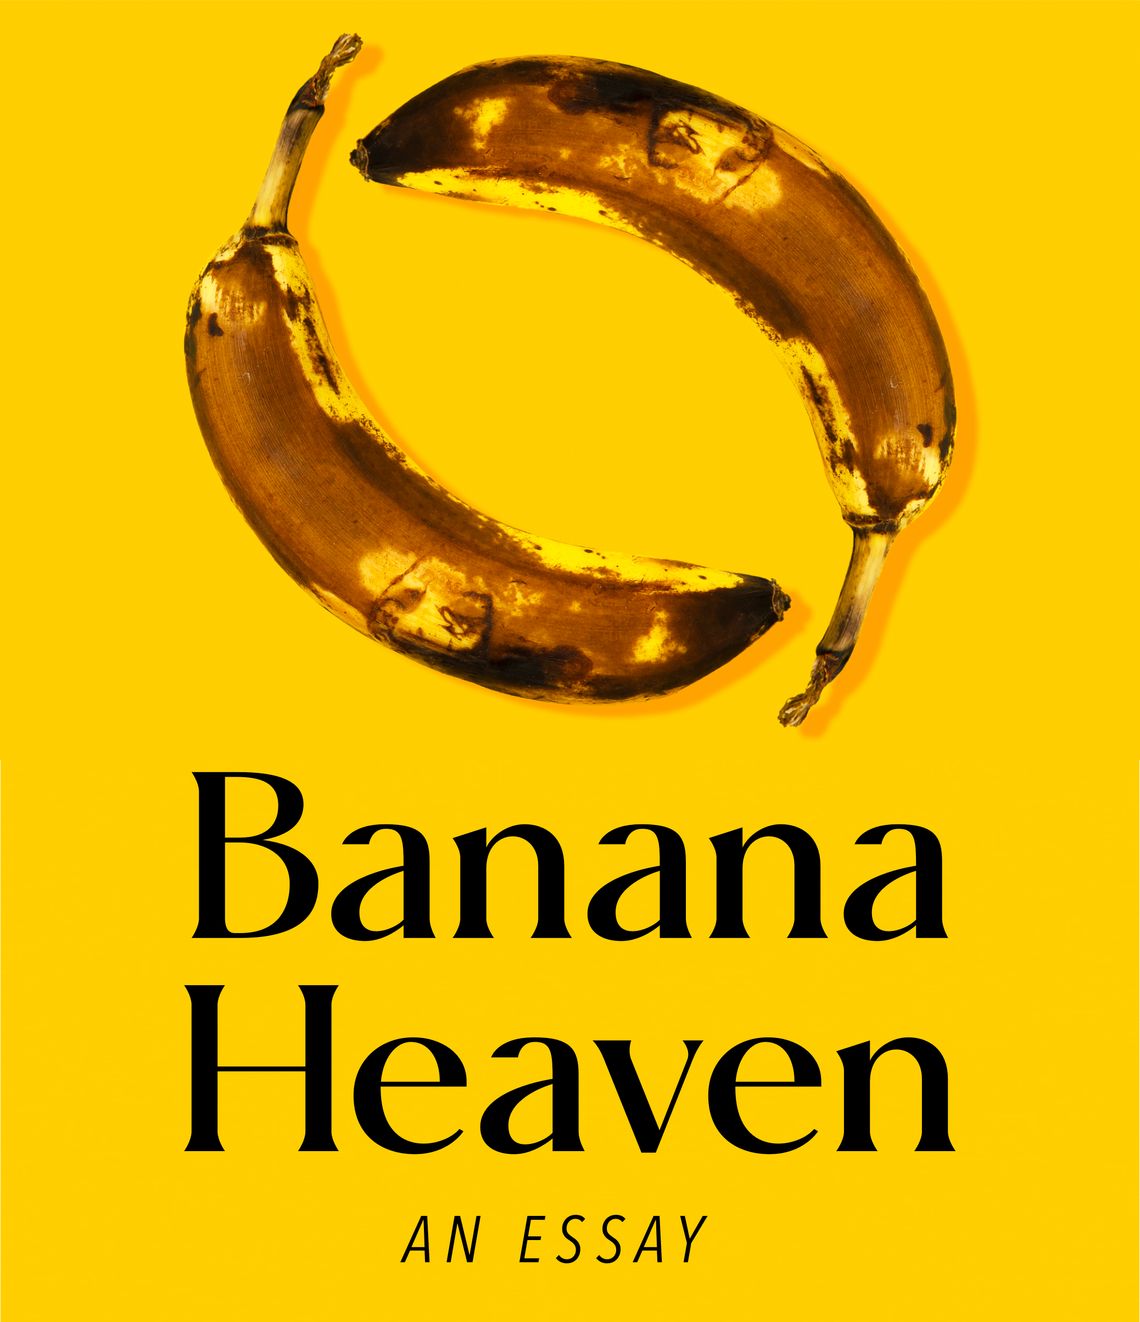 Banana Heaven